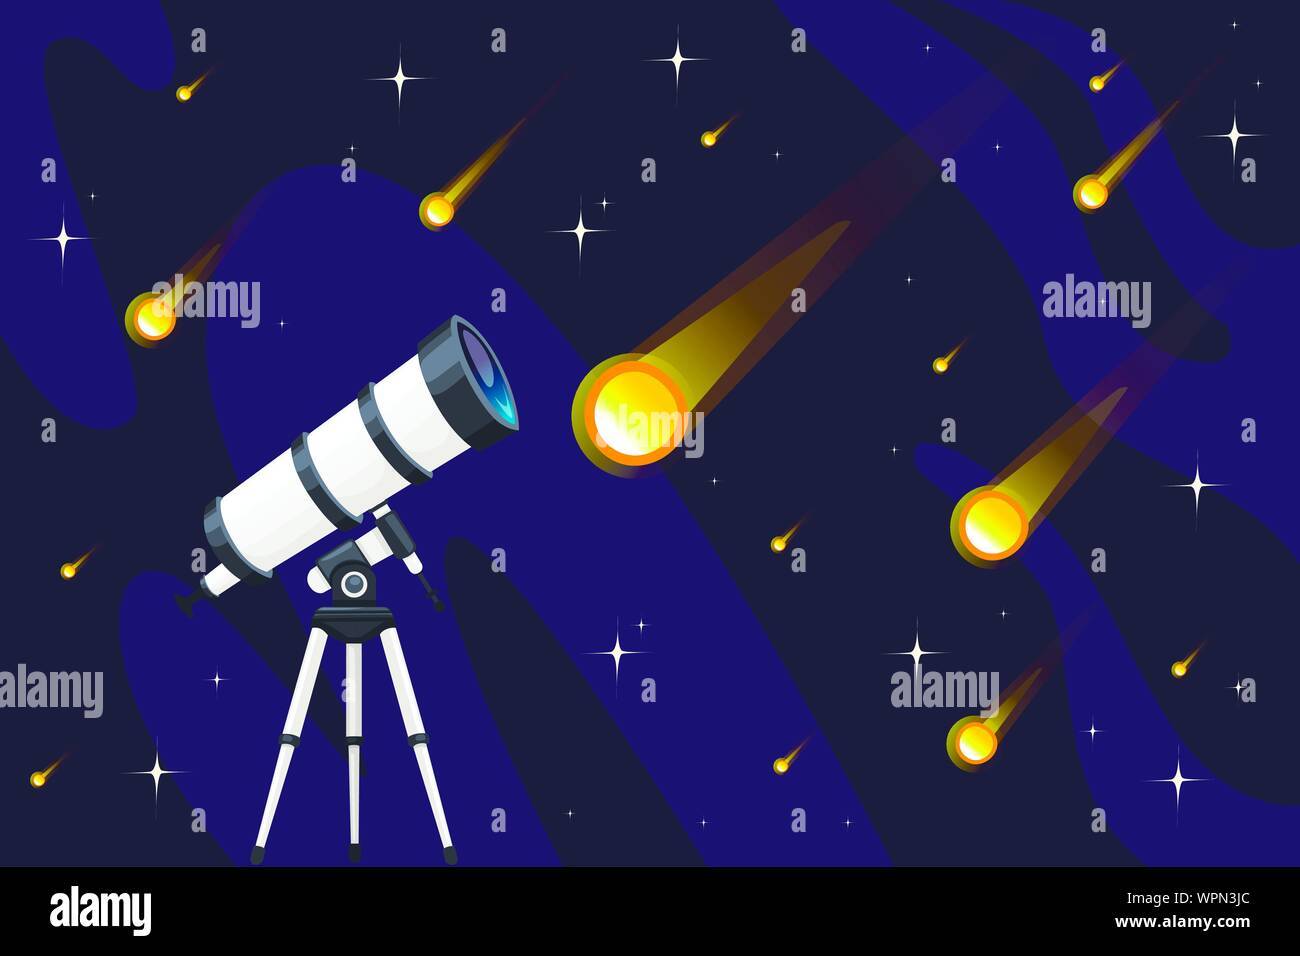 Weiß Teleskop und Sternschnuppen am nächtlichen Himmel Hintergrund flachbild Vektor-illustration sternenregen Design horizontale Banner. Stock Vektor